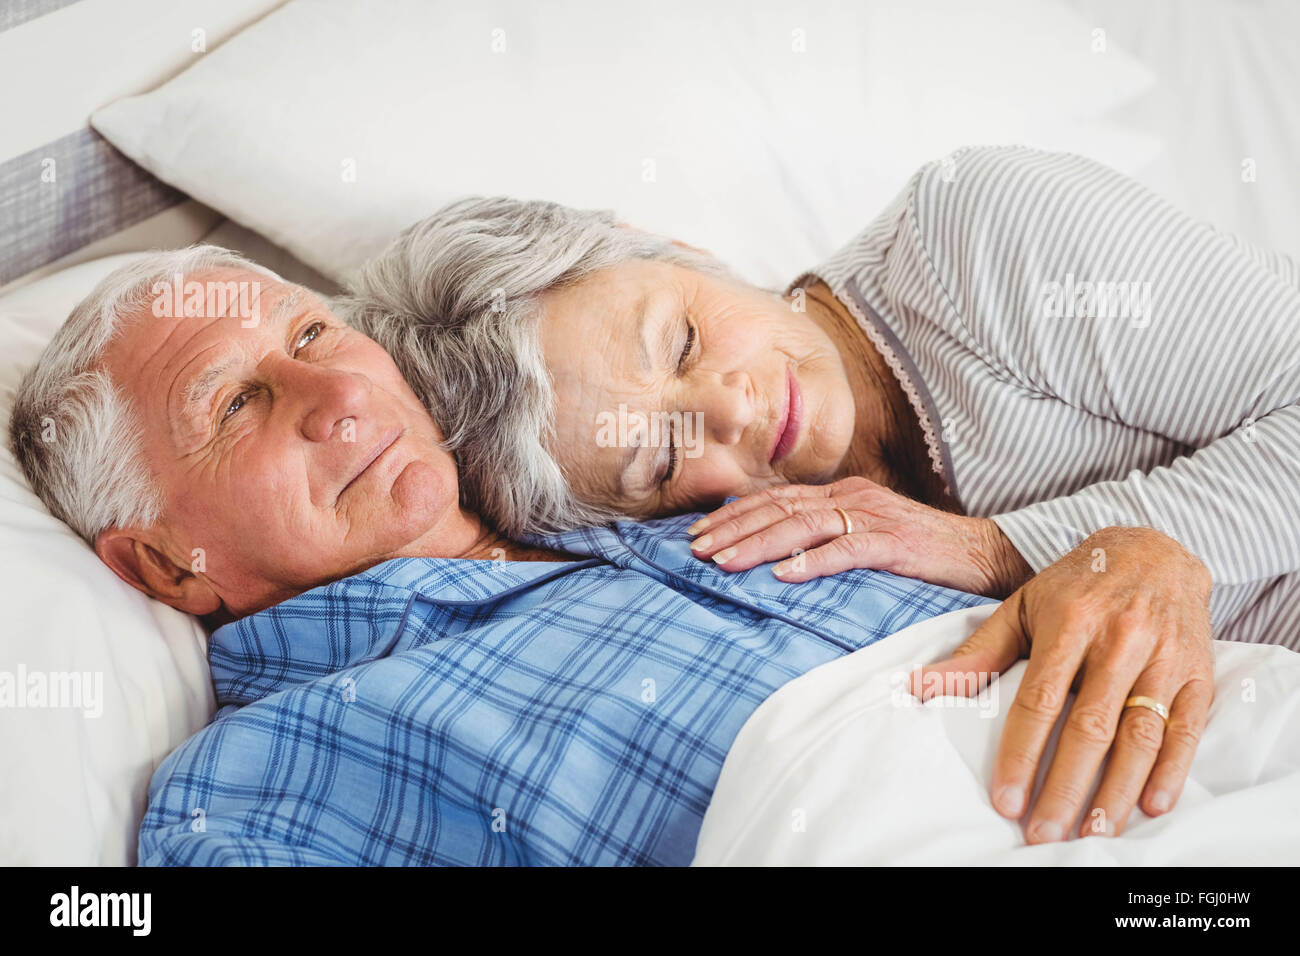 Senior man lying awake next to asleep senior woman Stock Photo